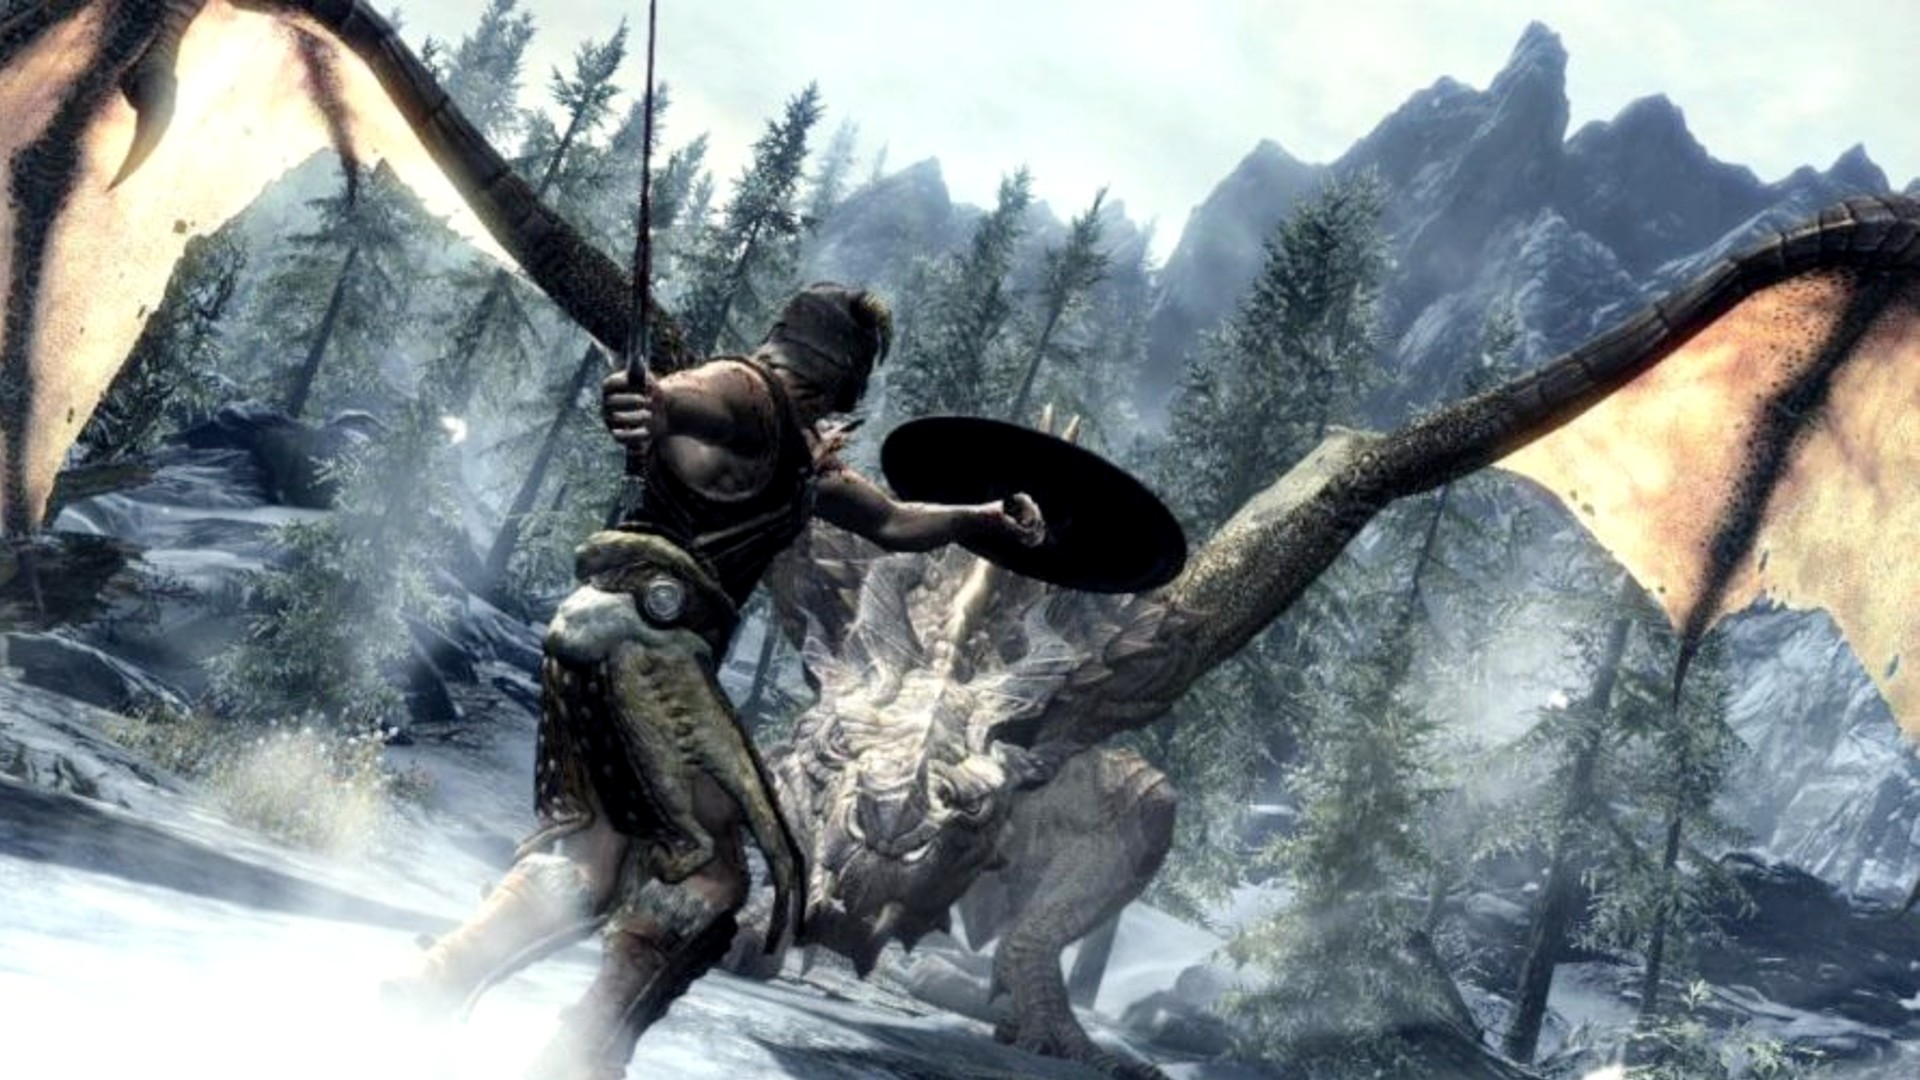 Migliori giochi di gioco di ruolo: Skyrim. L'immagine mostra qualcuno che si prepara a combattere un drago in un ambiente nevoso